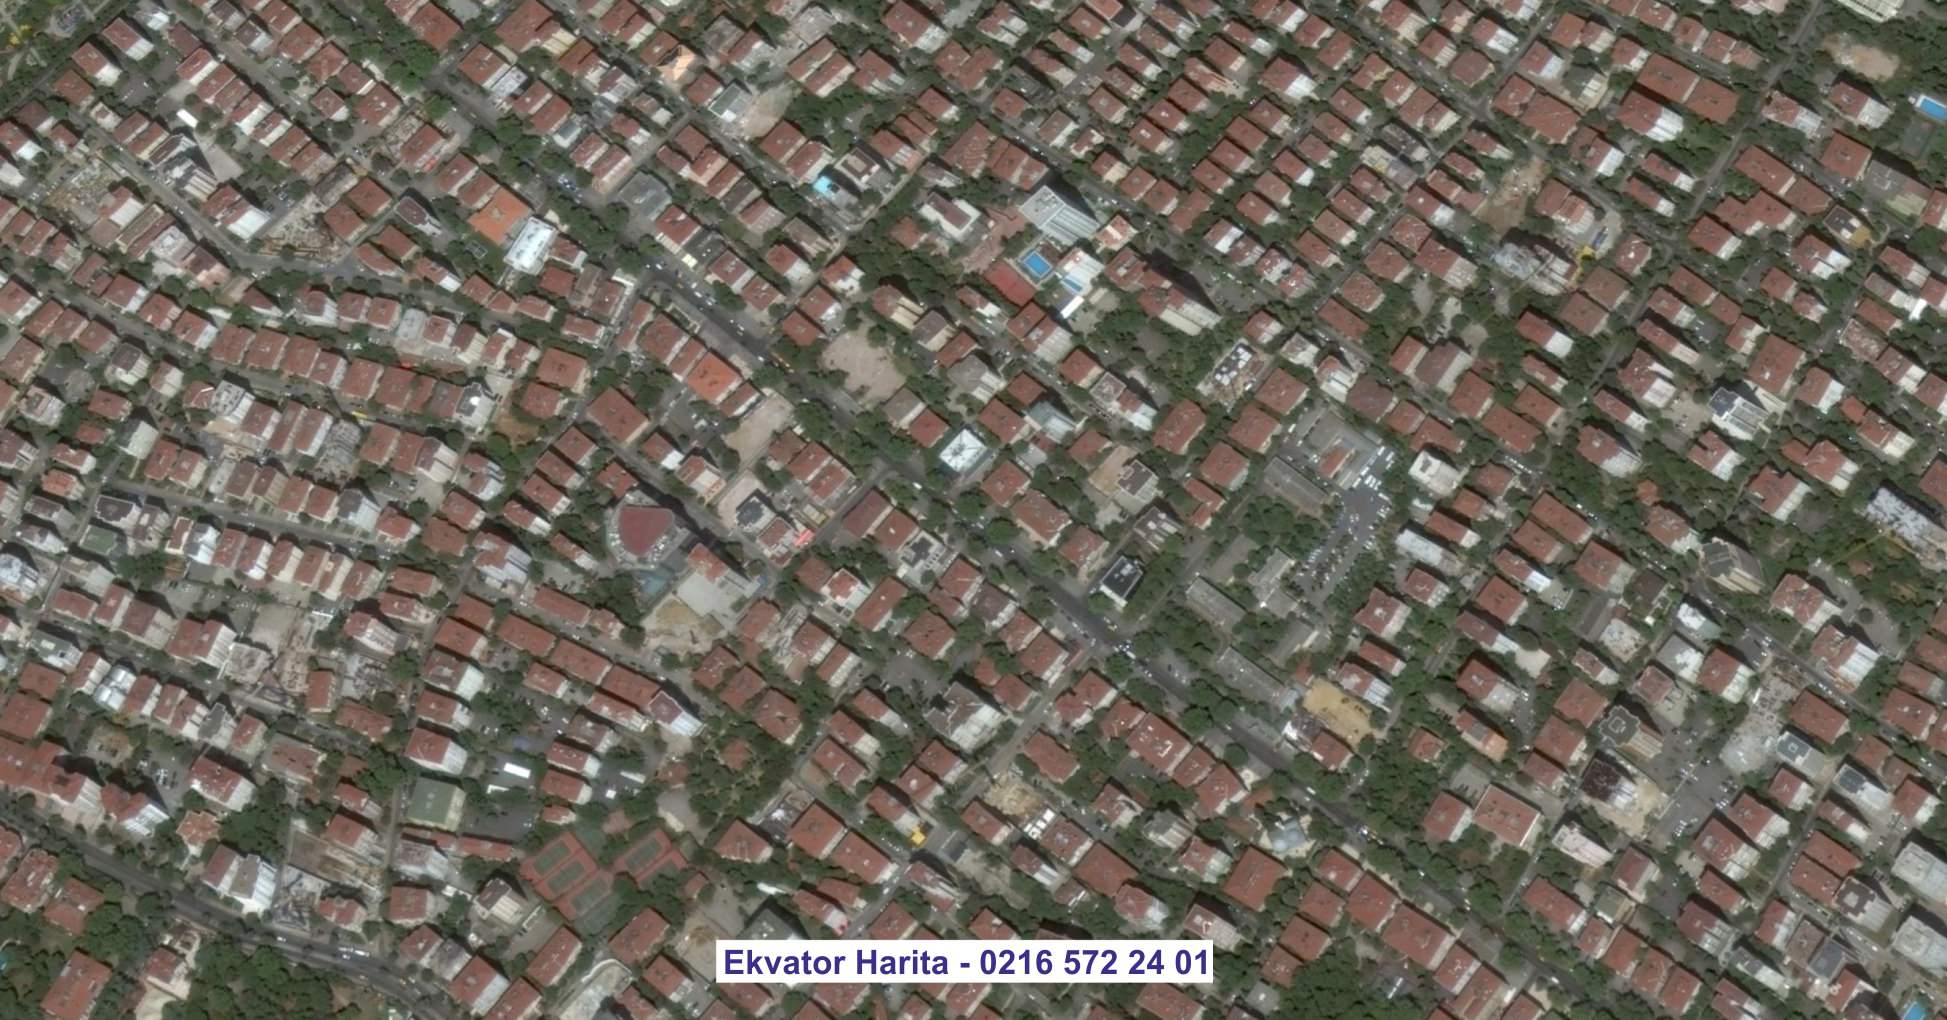 Göreme Uydu Görüntüsü Örnek Fotoğrafı